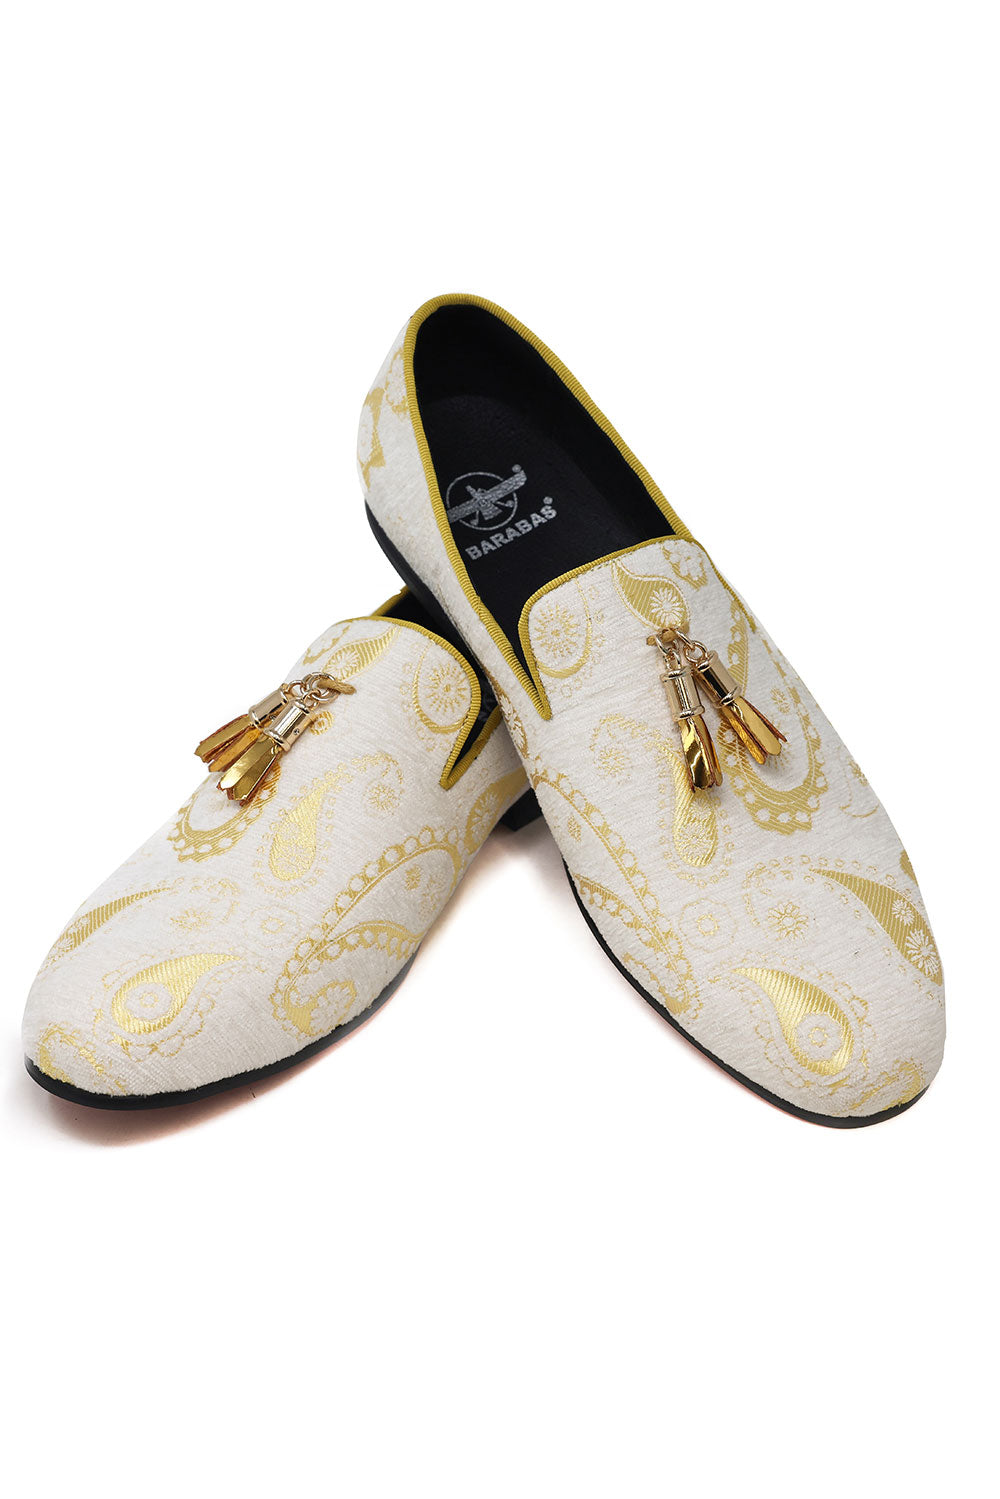 Barabas Men's Paisley Design Tassel Slip On Loafer Shoes 2SH3101 White Gold